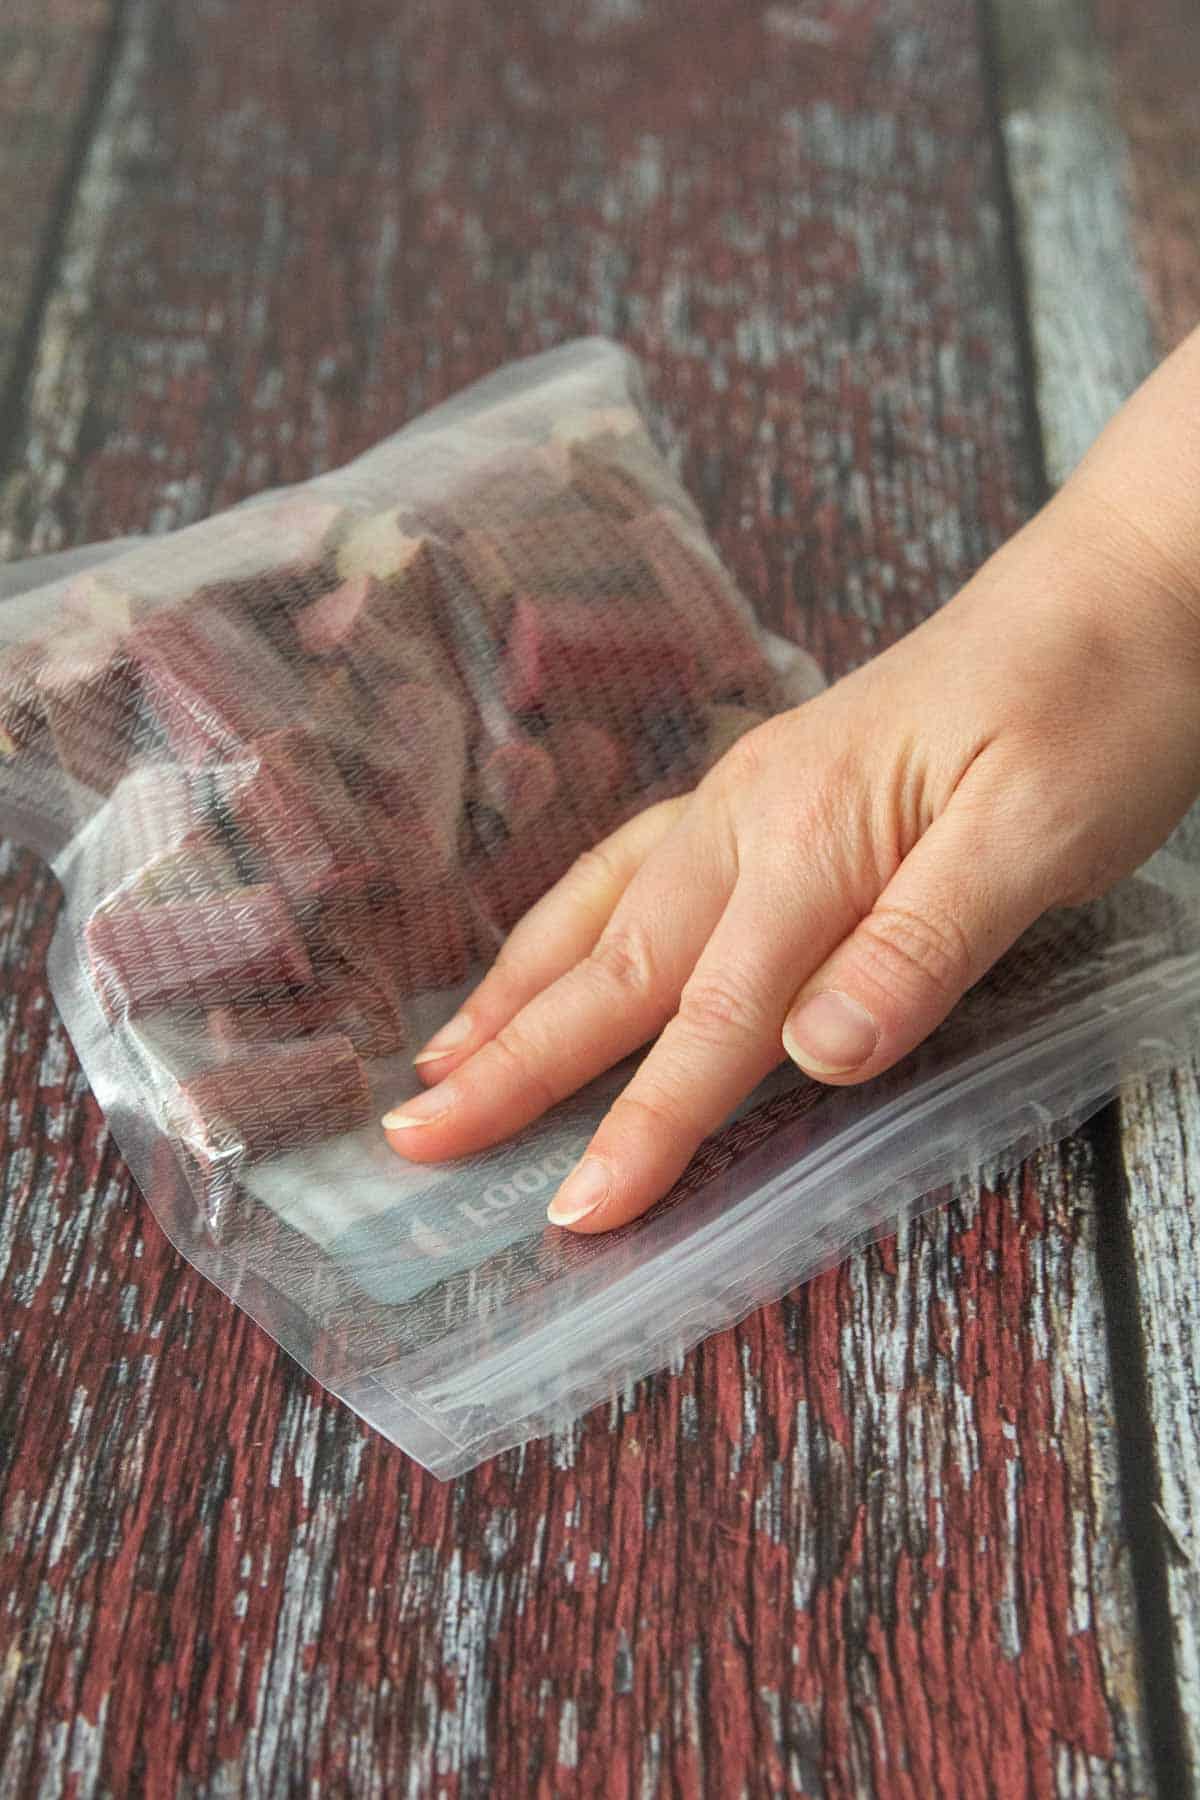 sealing freezer bag of rhubarb